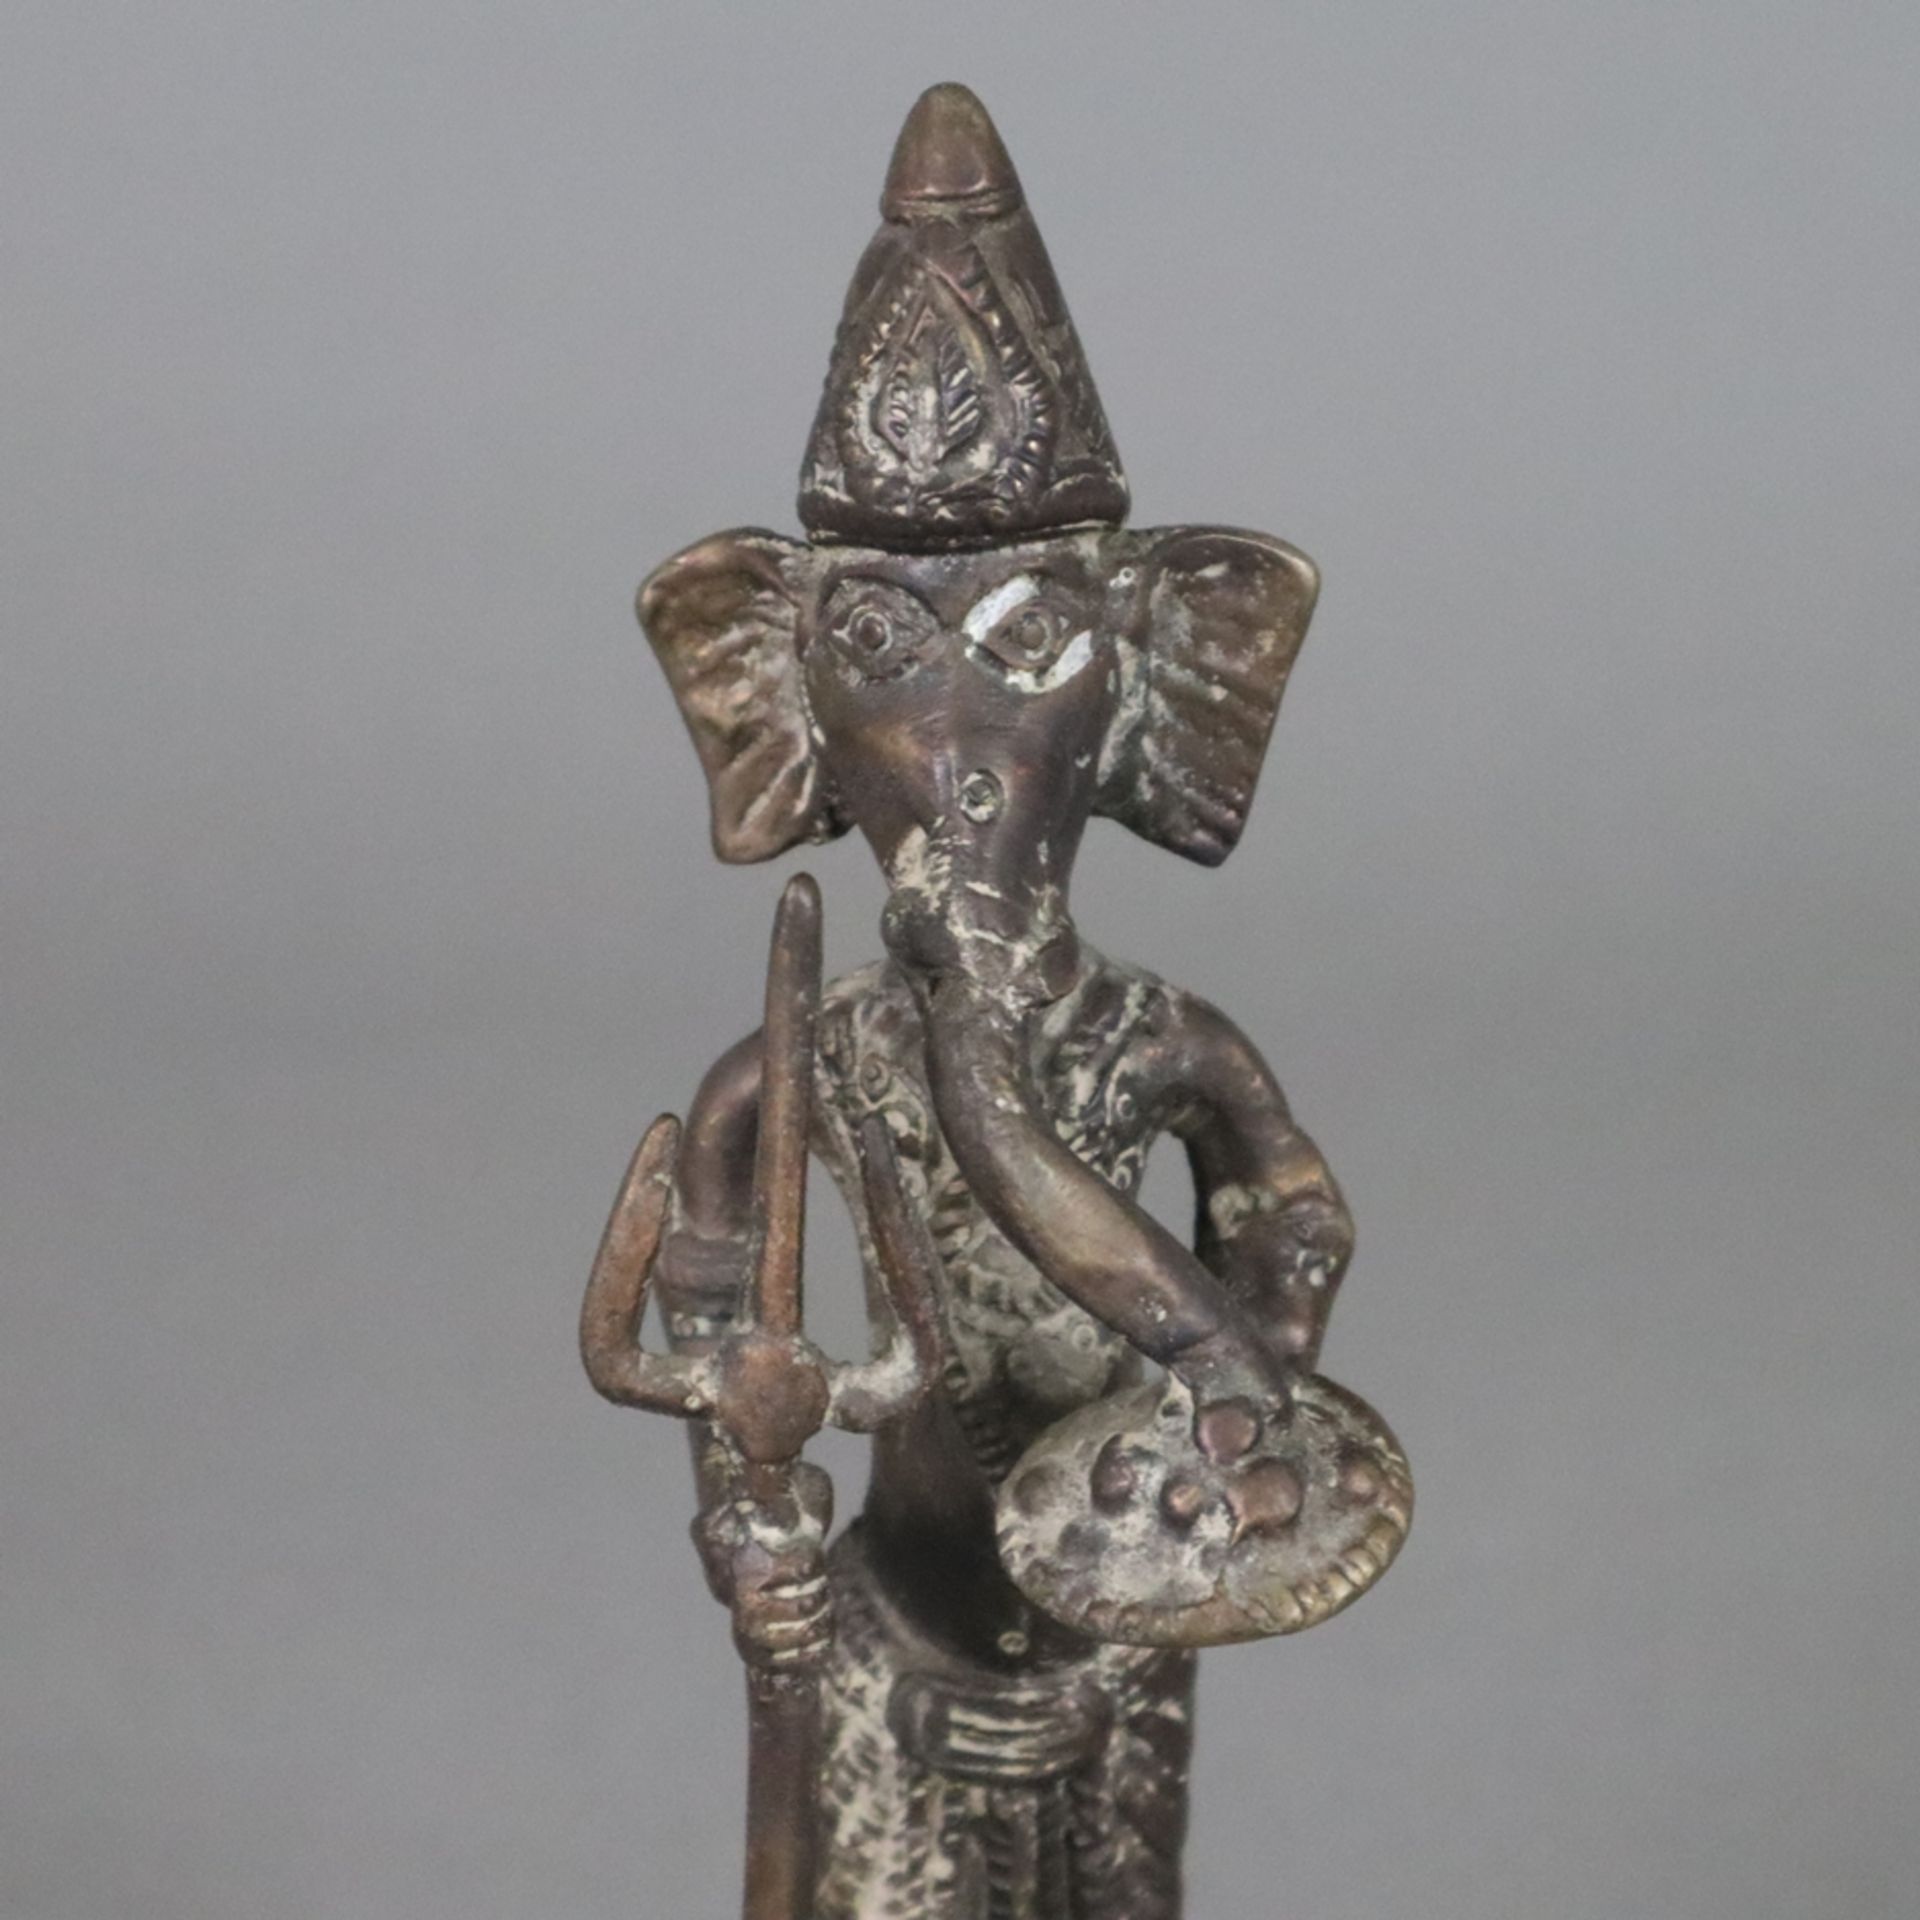 Elefantengott Ganesha - wohl Tibet/Nepal, Bronze, braun patiniert, stehende Darstellung mit Zepter  - Bild 3 aus 7